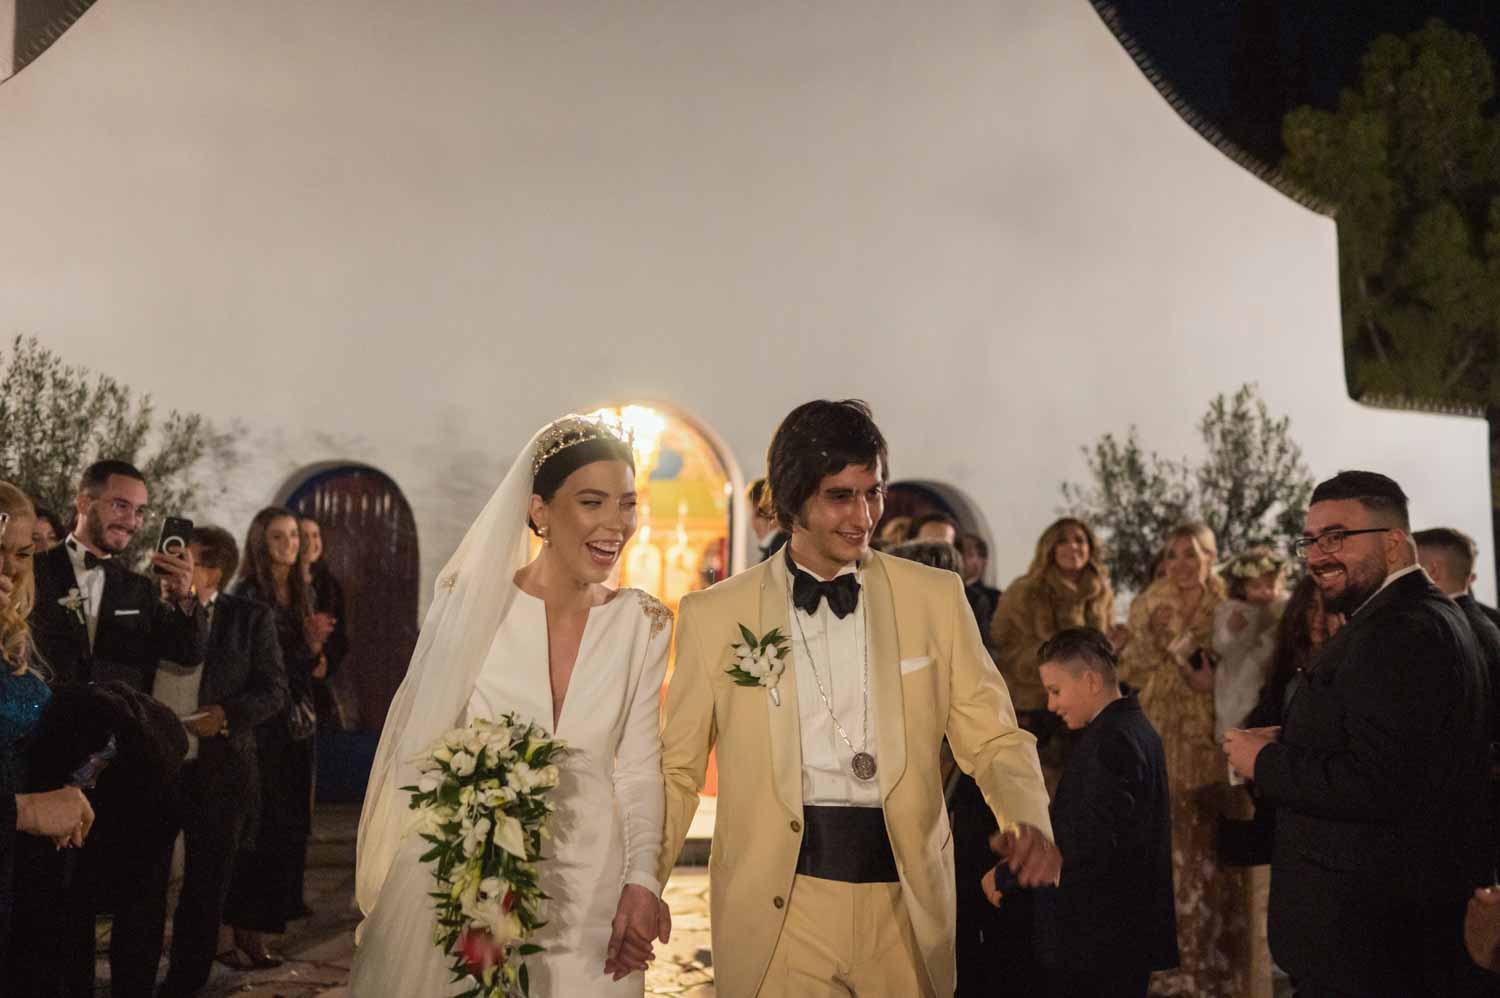 John & Denise - Καβούρι, Αττική : Real Wedding by Imagine Studio